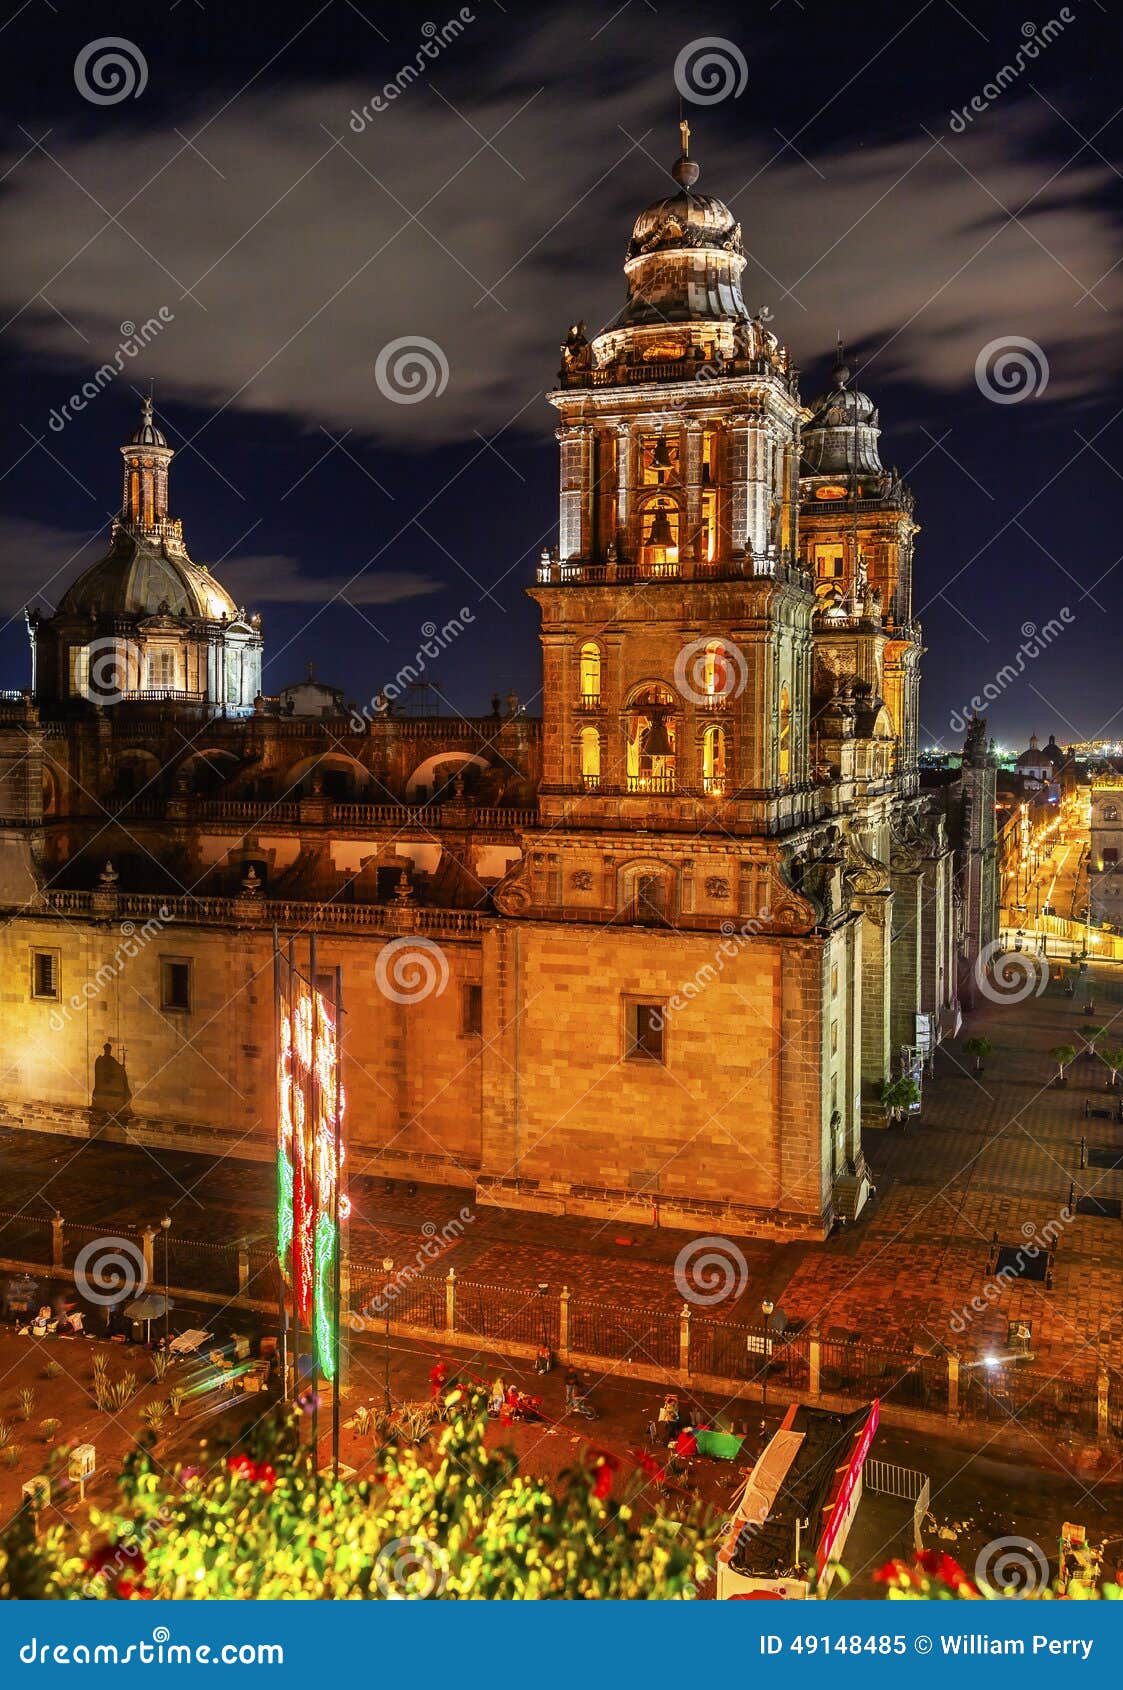 metropolitan cathedral zocalo mexico city mexico at night